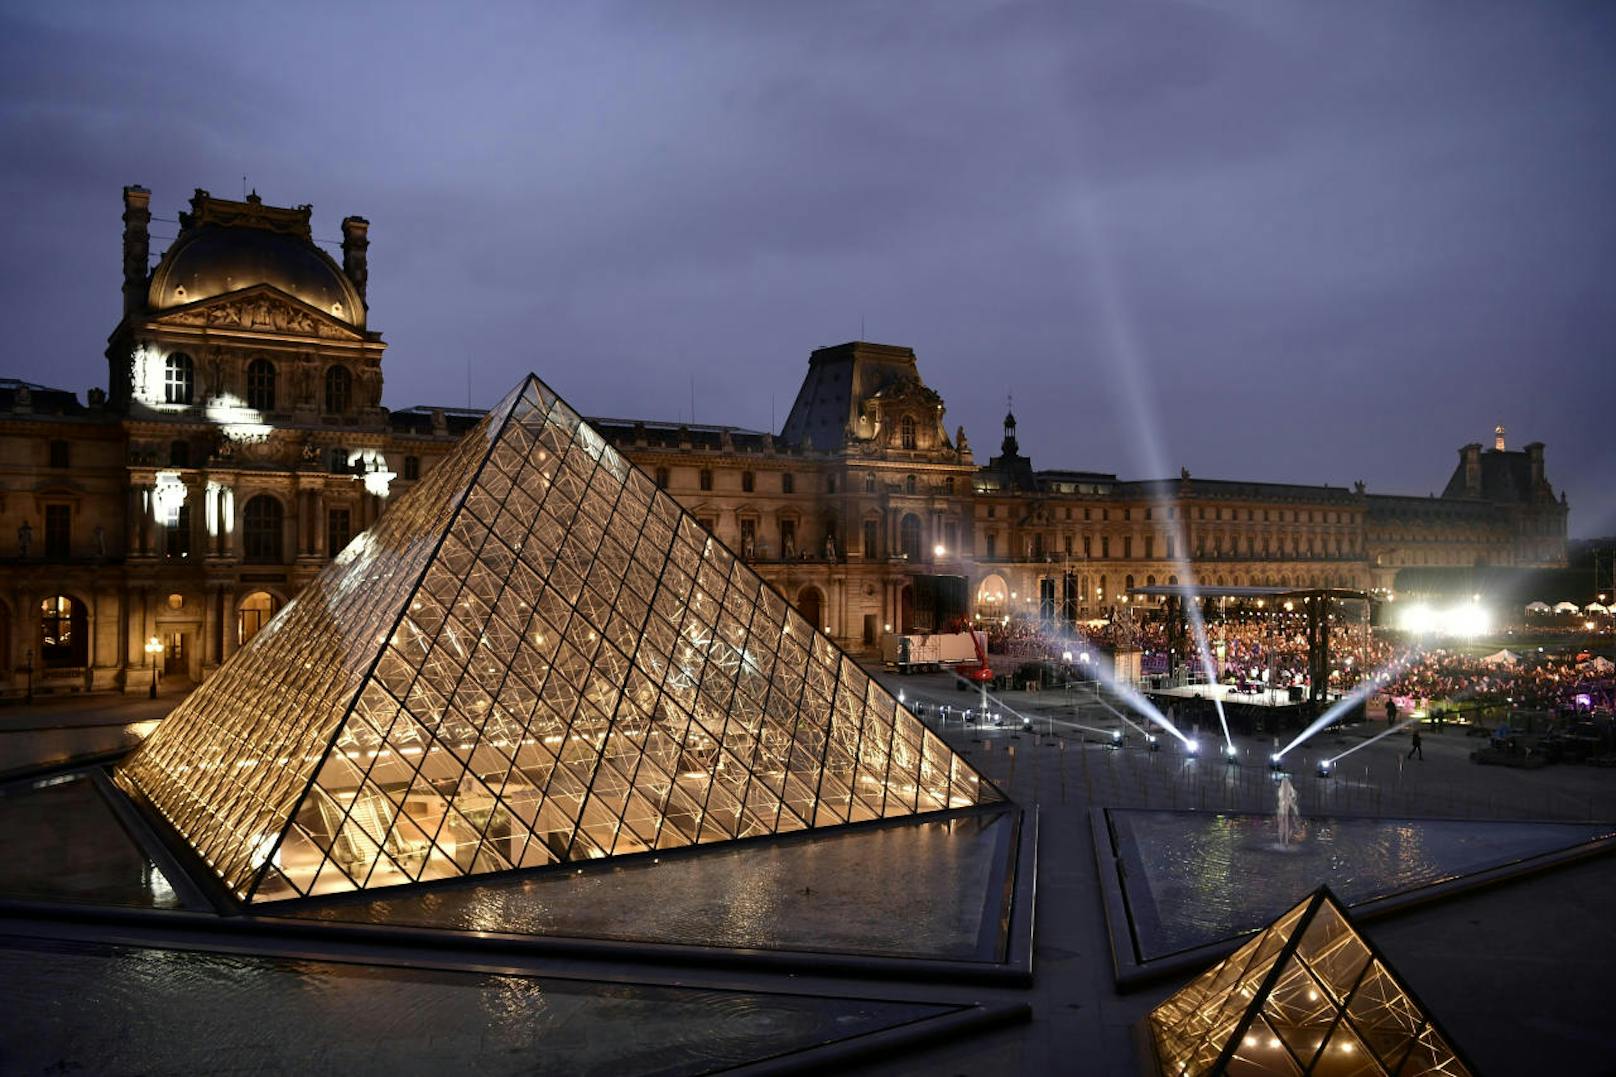 Großes Vorbild: Der Louvre in Paris ist das berühmteste Museum der Welt